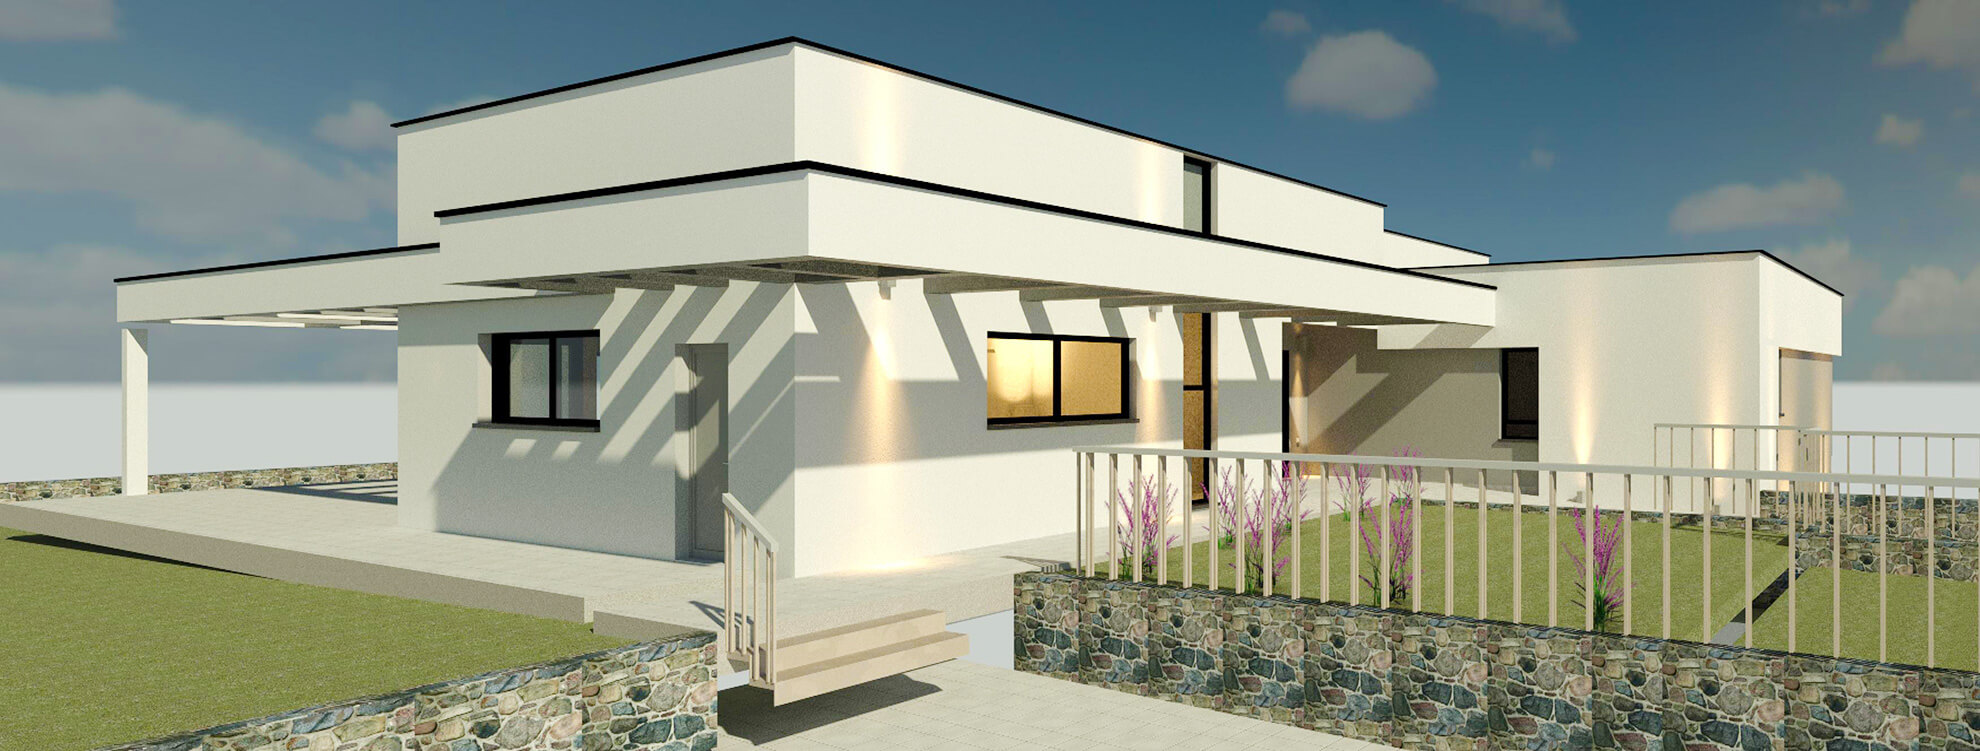 תמונת פרויקט אדריכלות מודרנית בצפון – עיצוב נקי בארבל